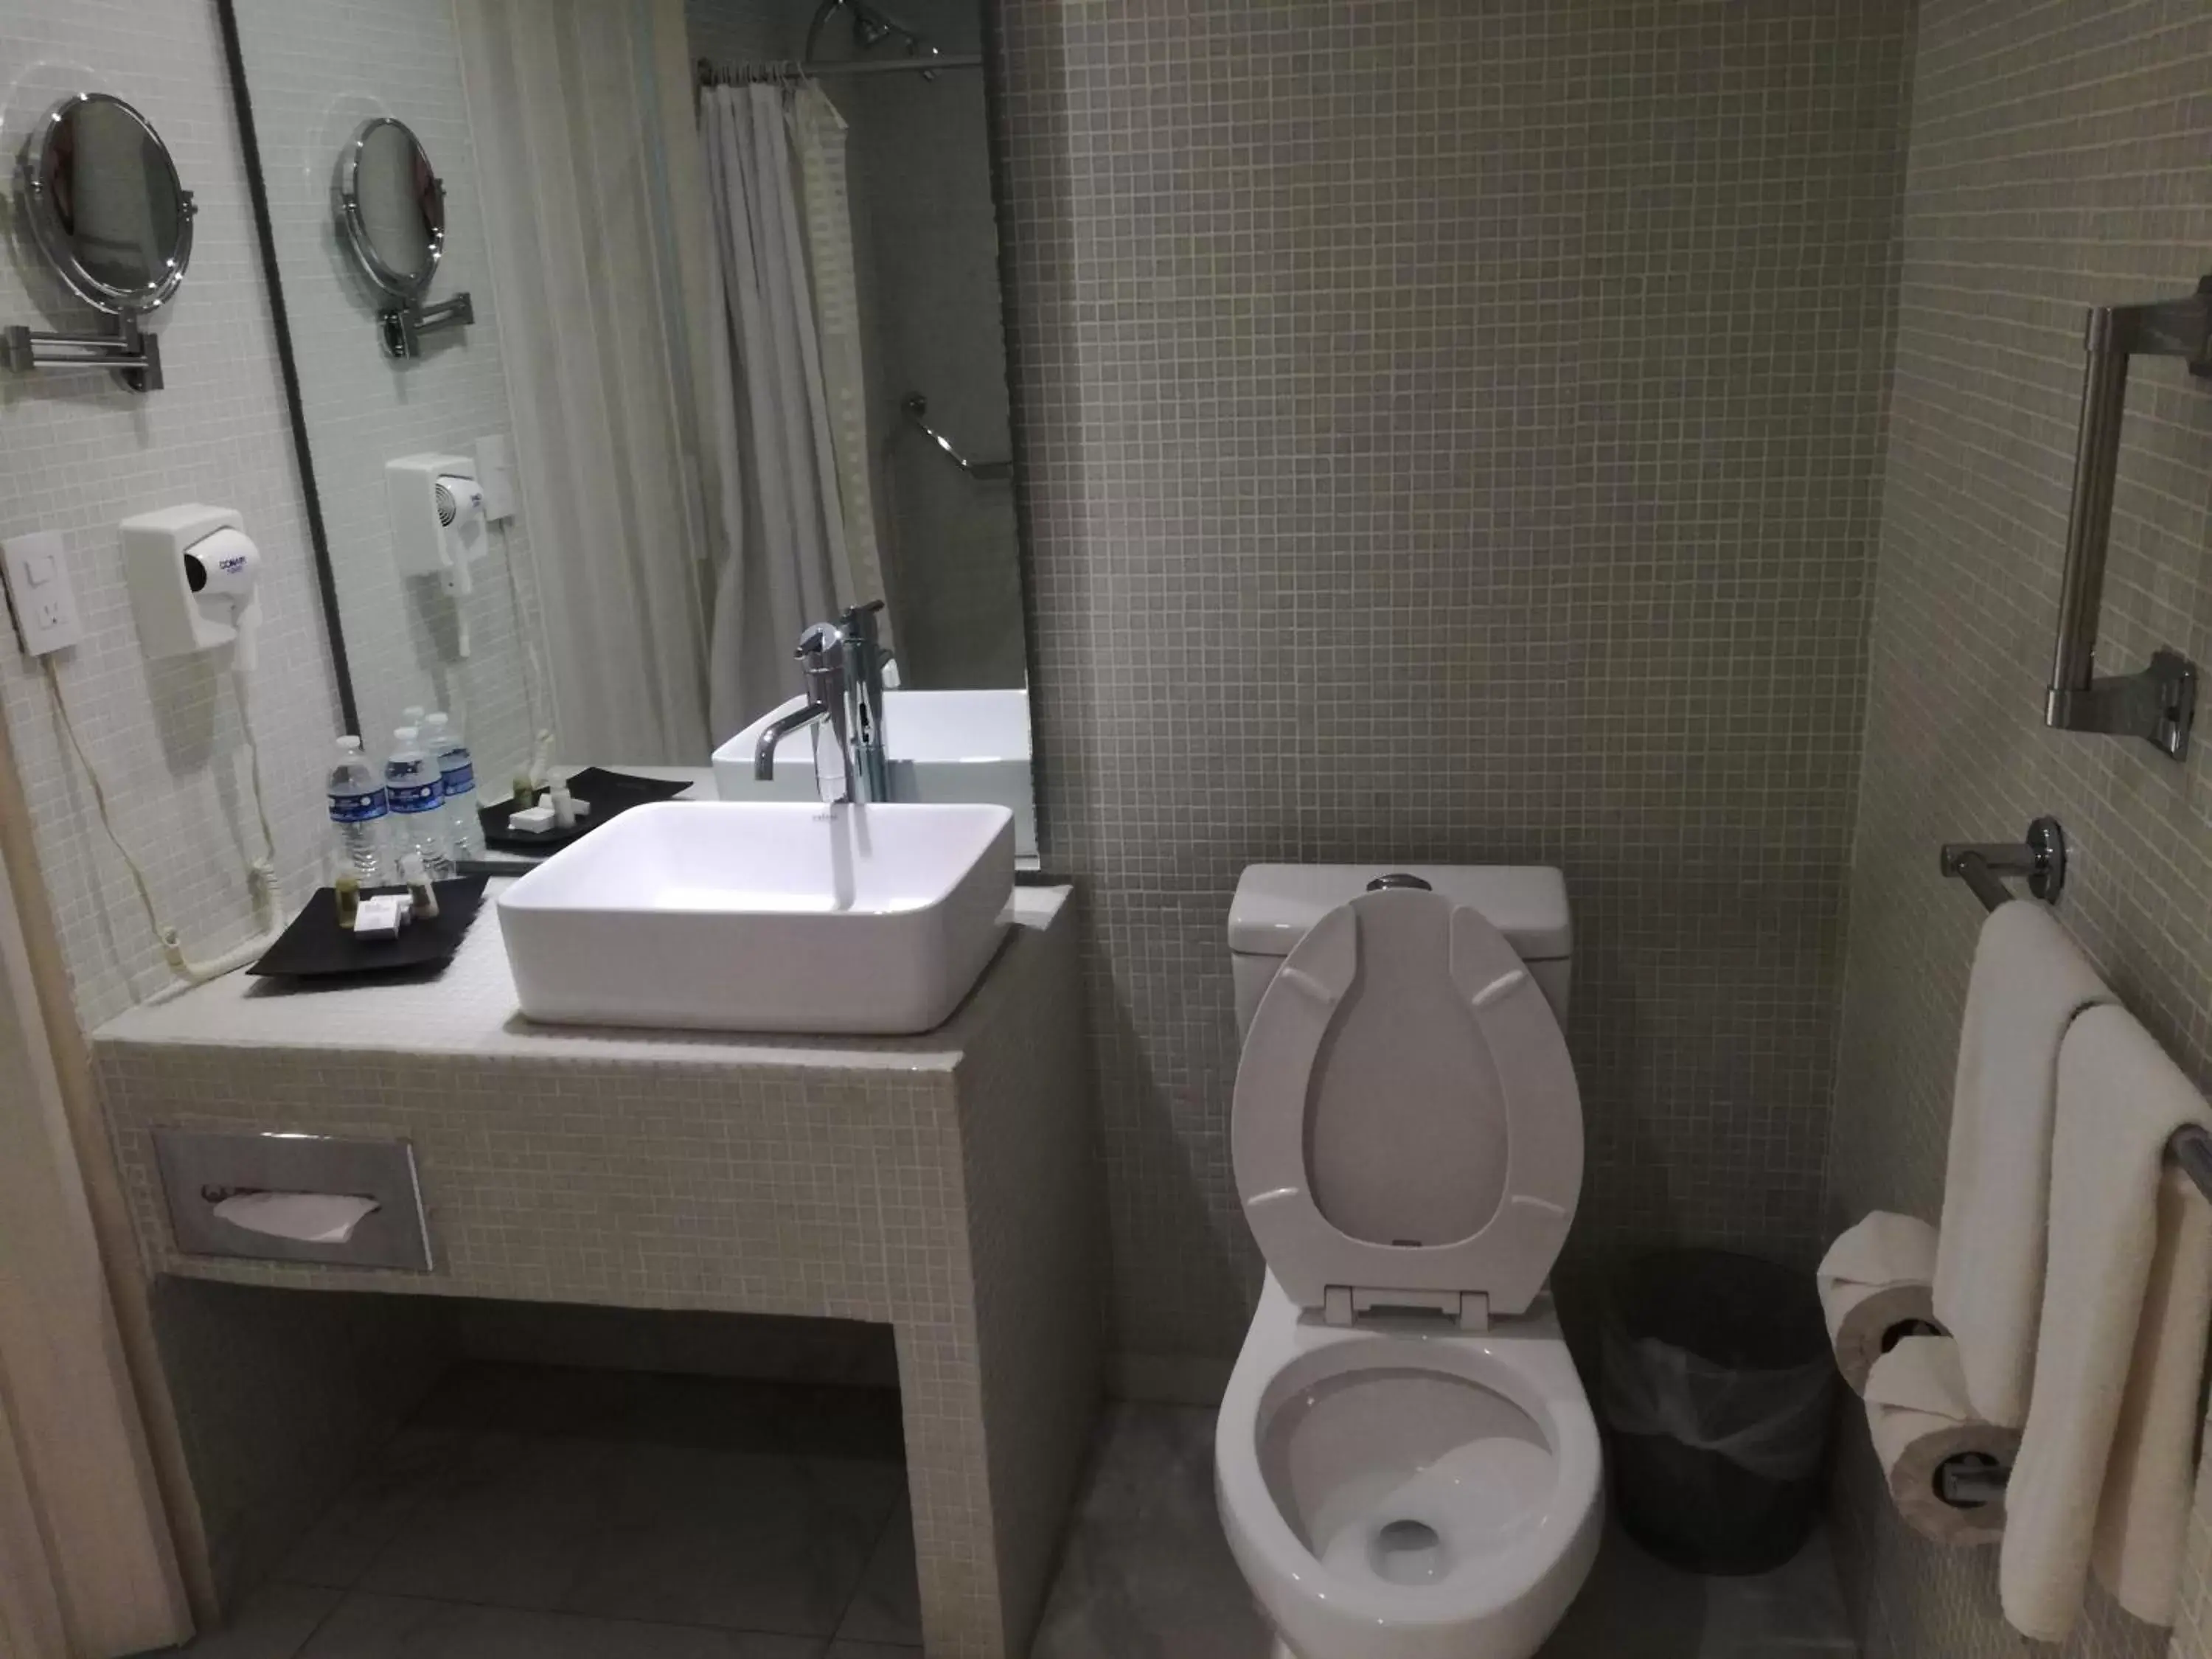 Bathroom in We Hotel Acapulco